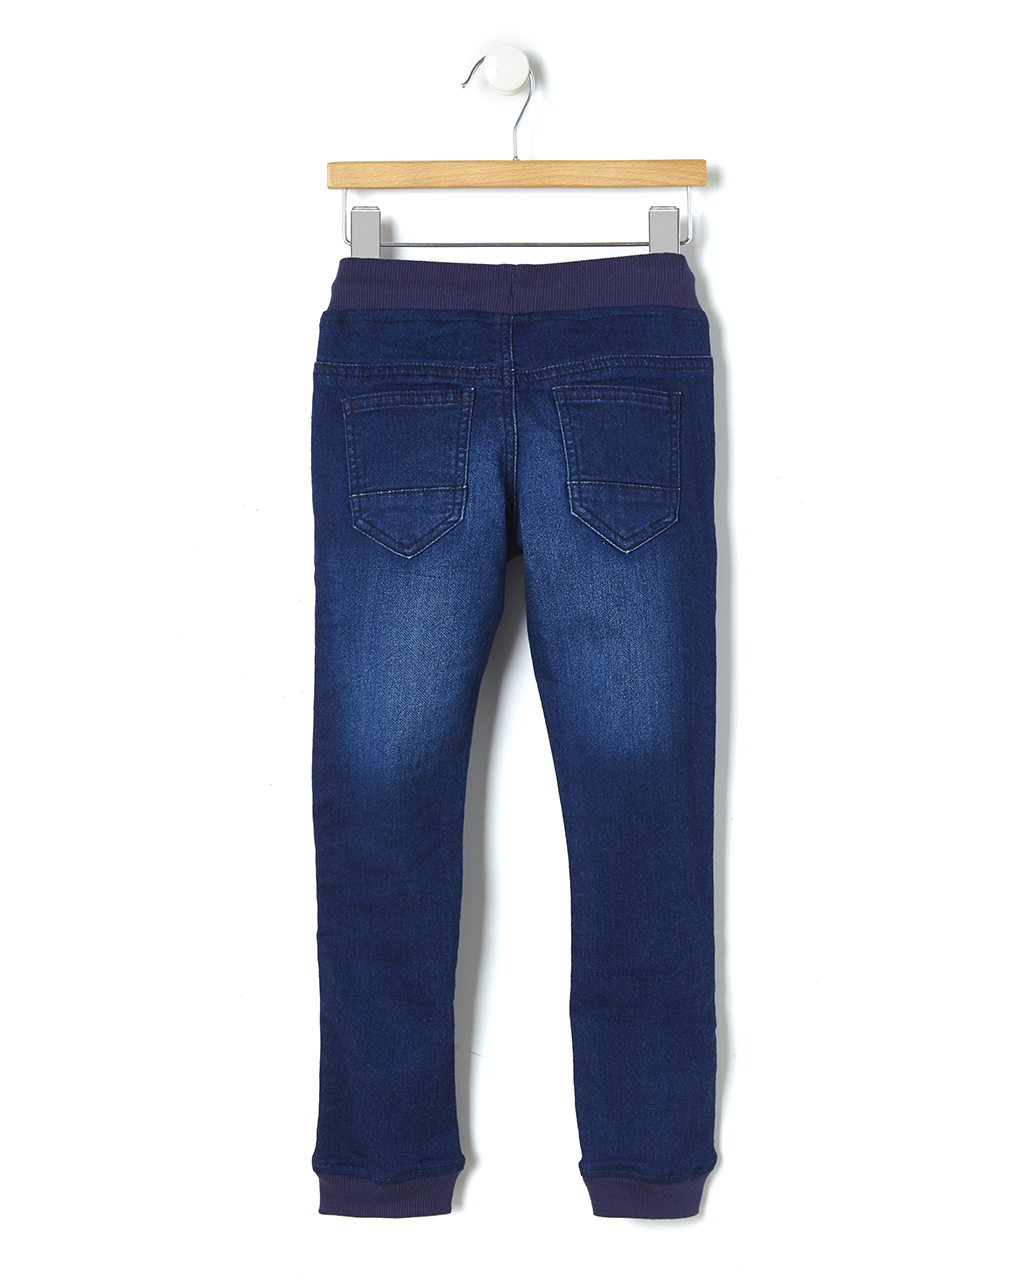 παντελόνι τζιν σκουρο μπλε μεγ.8/9-9/10 ετών - Prénatal